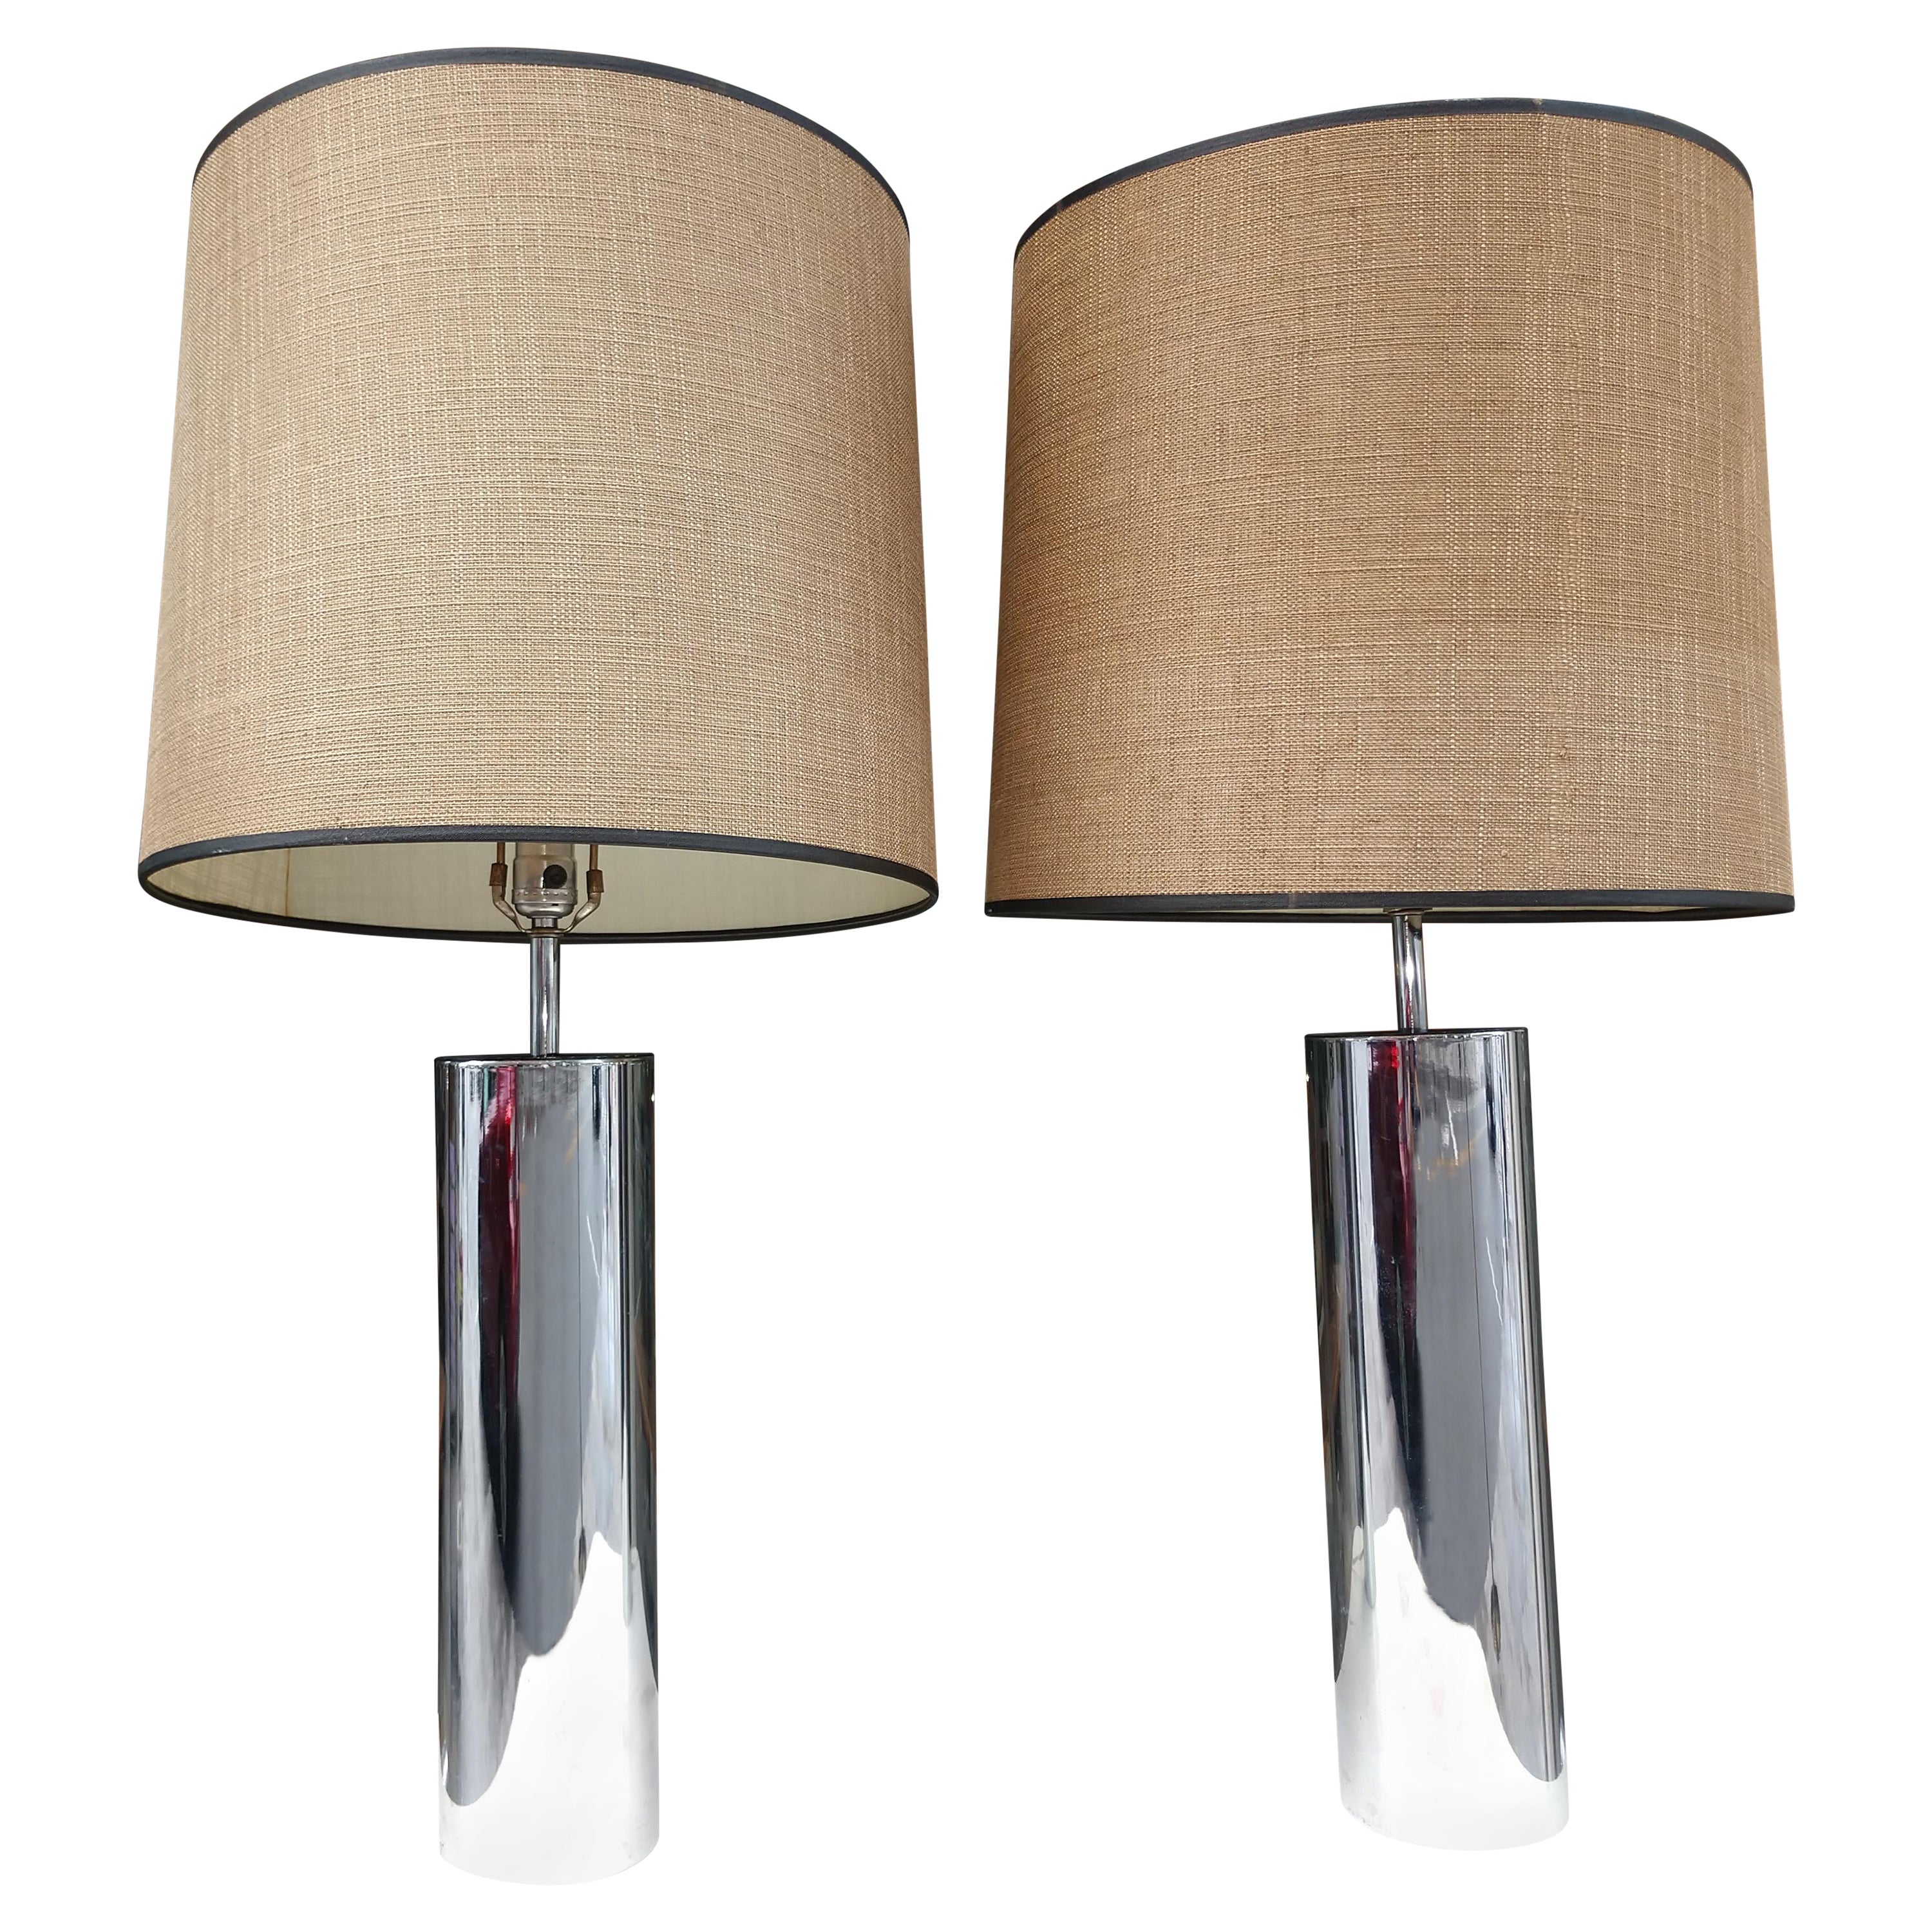 Pair of Mid Century Modern Stainless Table Lamps Robert Sonneman for Kovacs